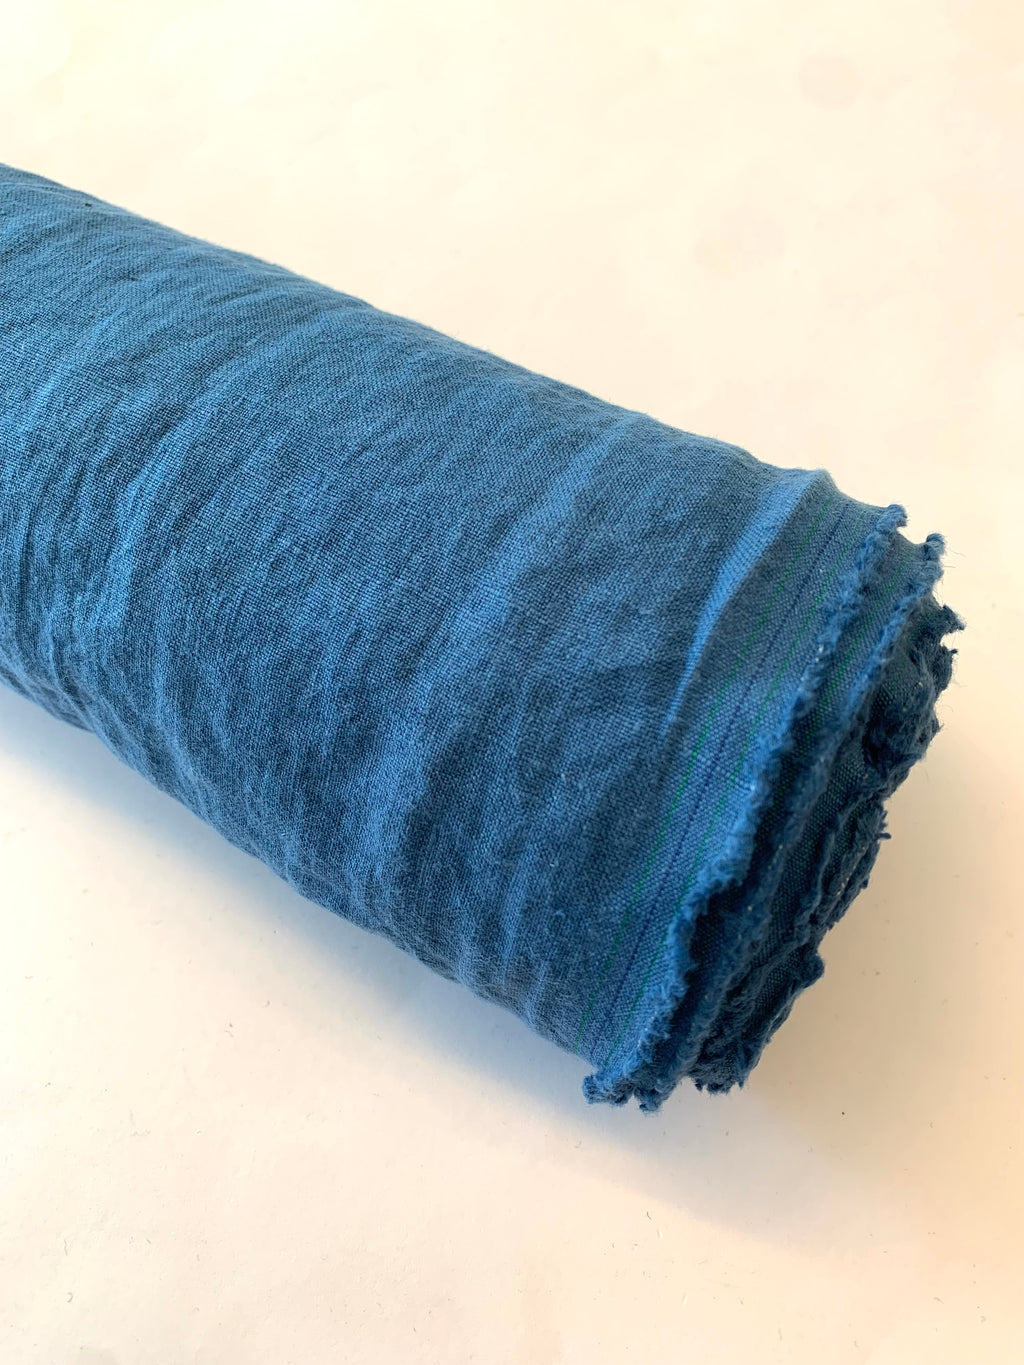 Antique Wash Linen in Dark Blue